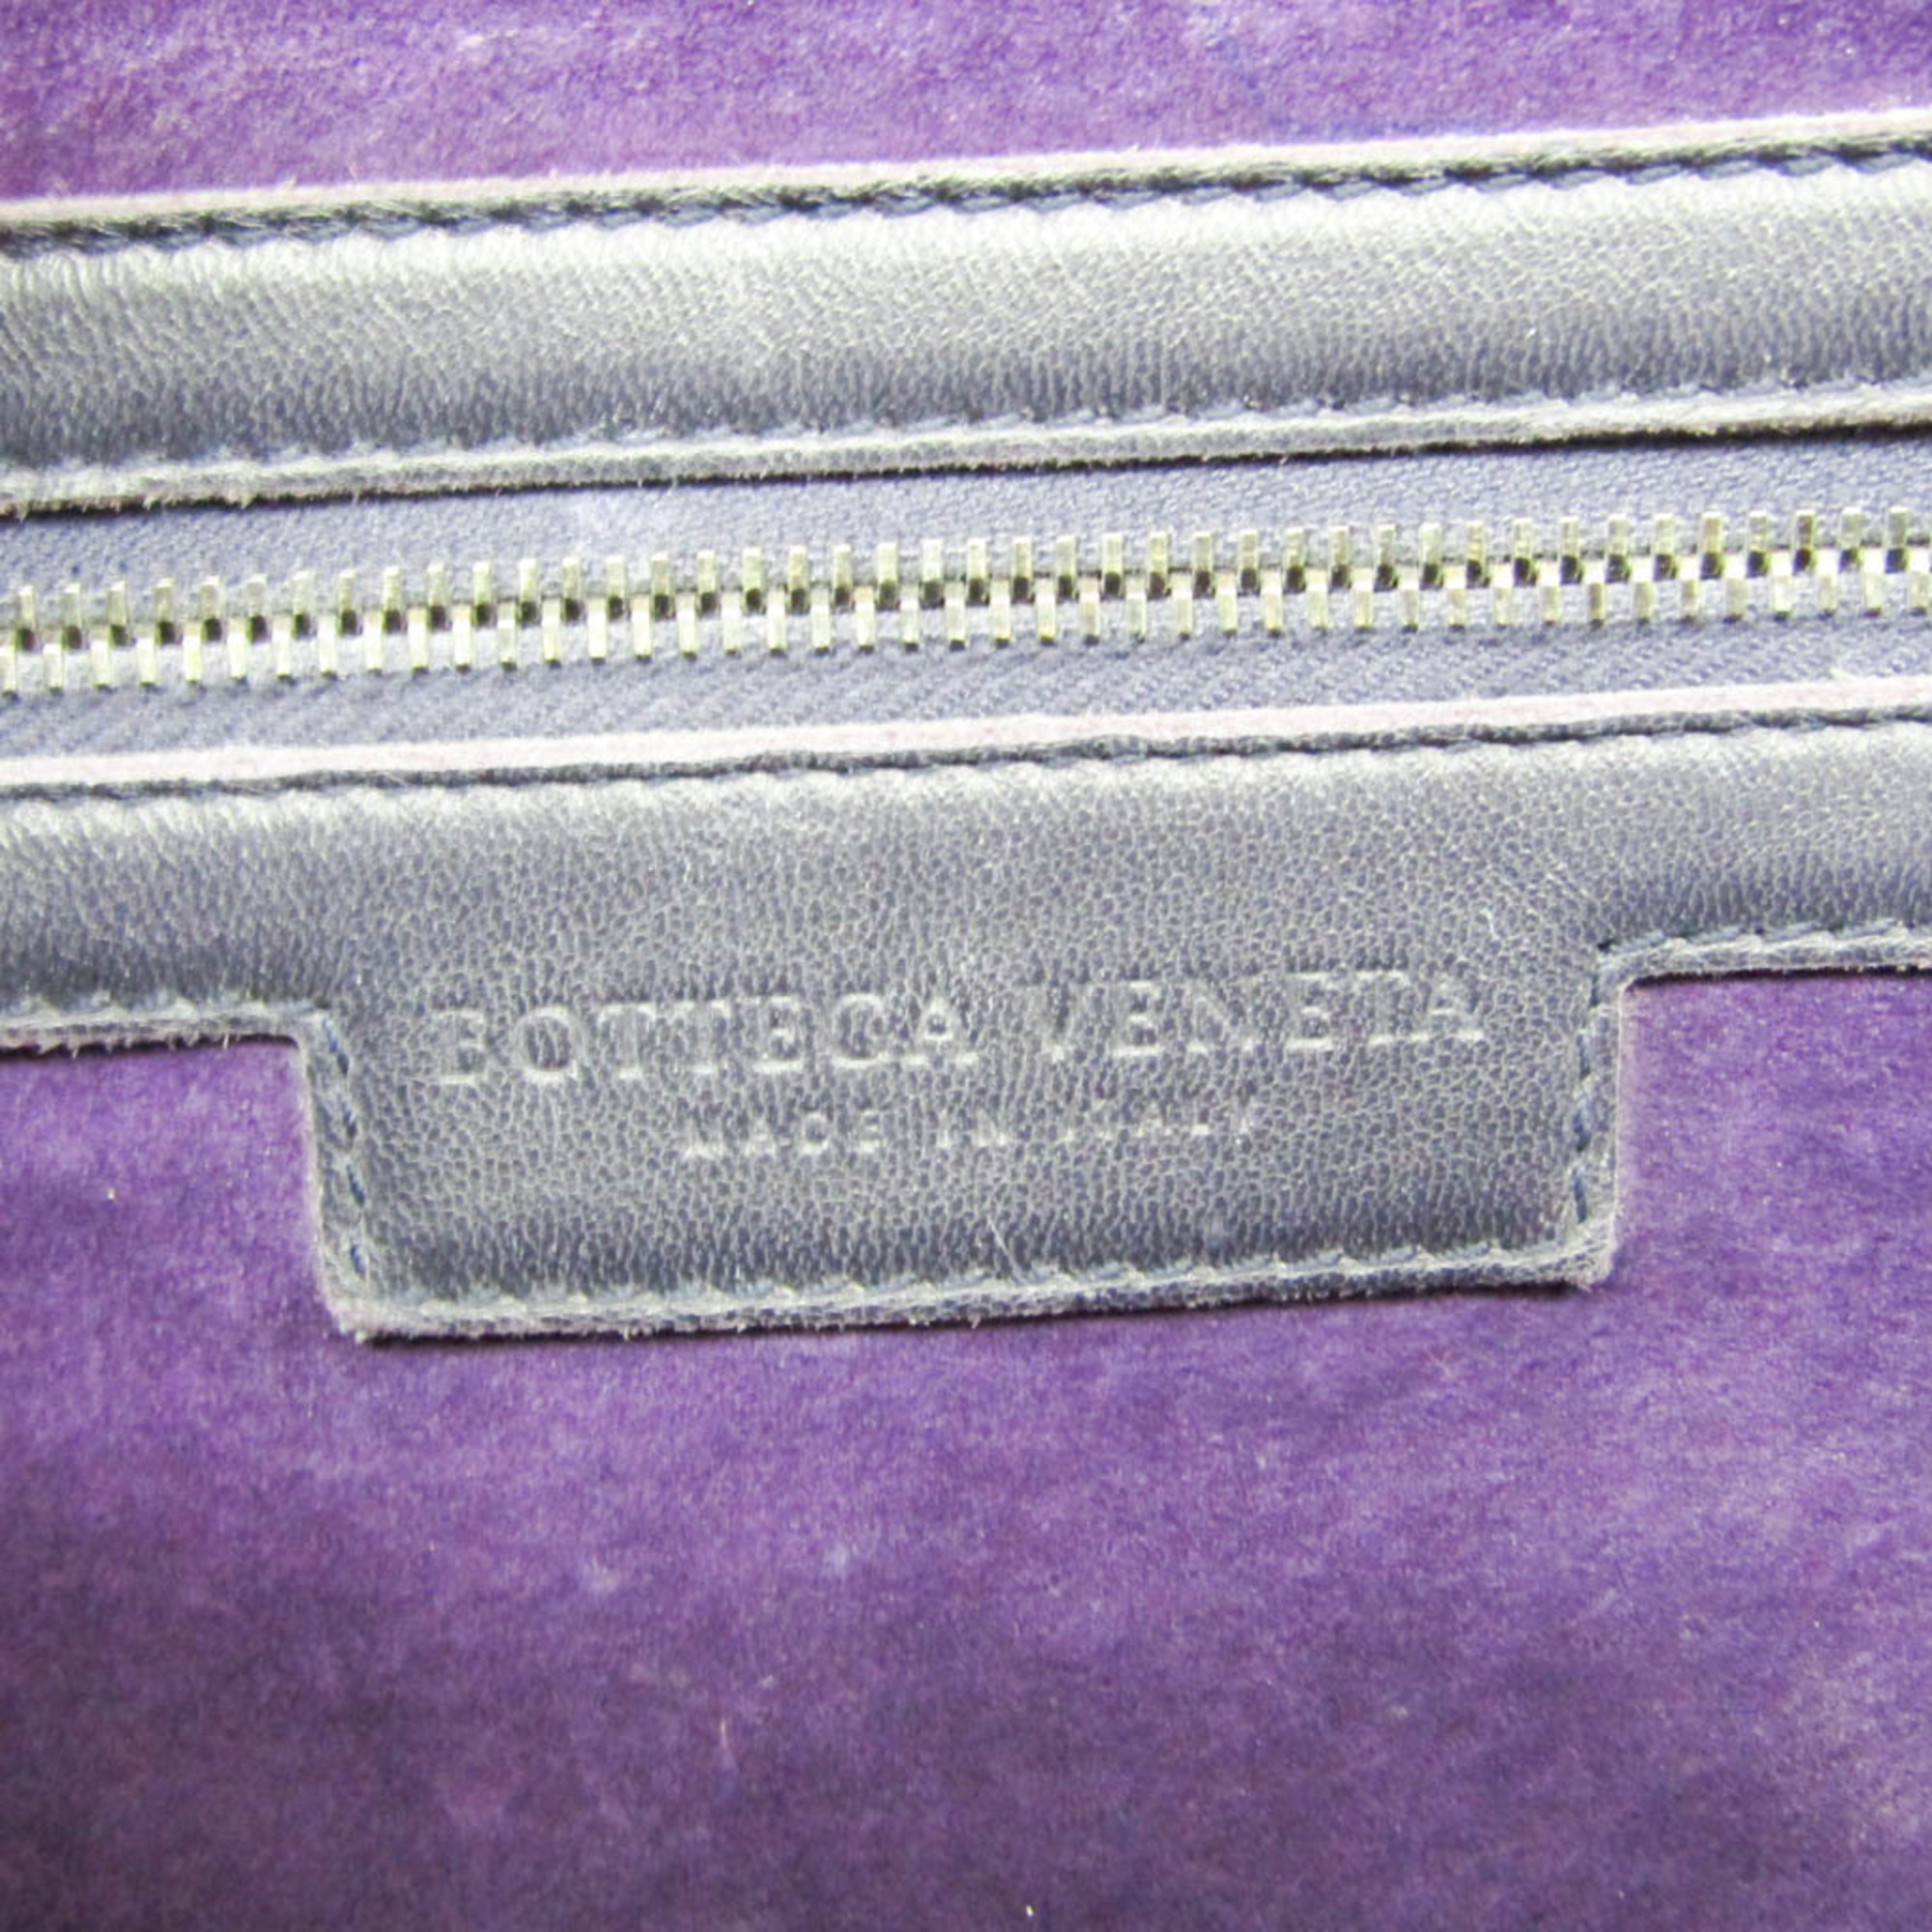 ボッテガ・ヴェネタ(Bottega Veneta) イントレチャート 214728 レディース レザー ハンドバッグ ダークパープル